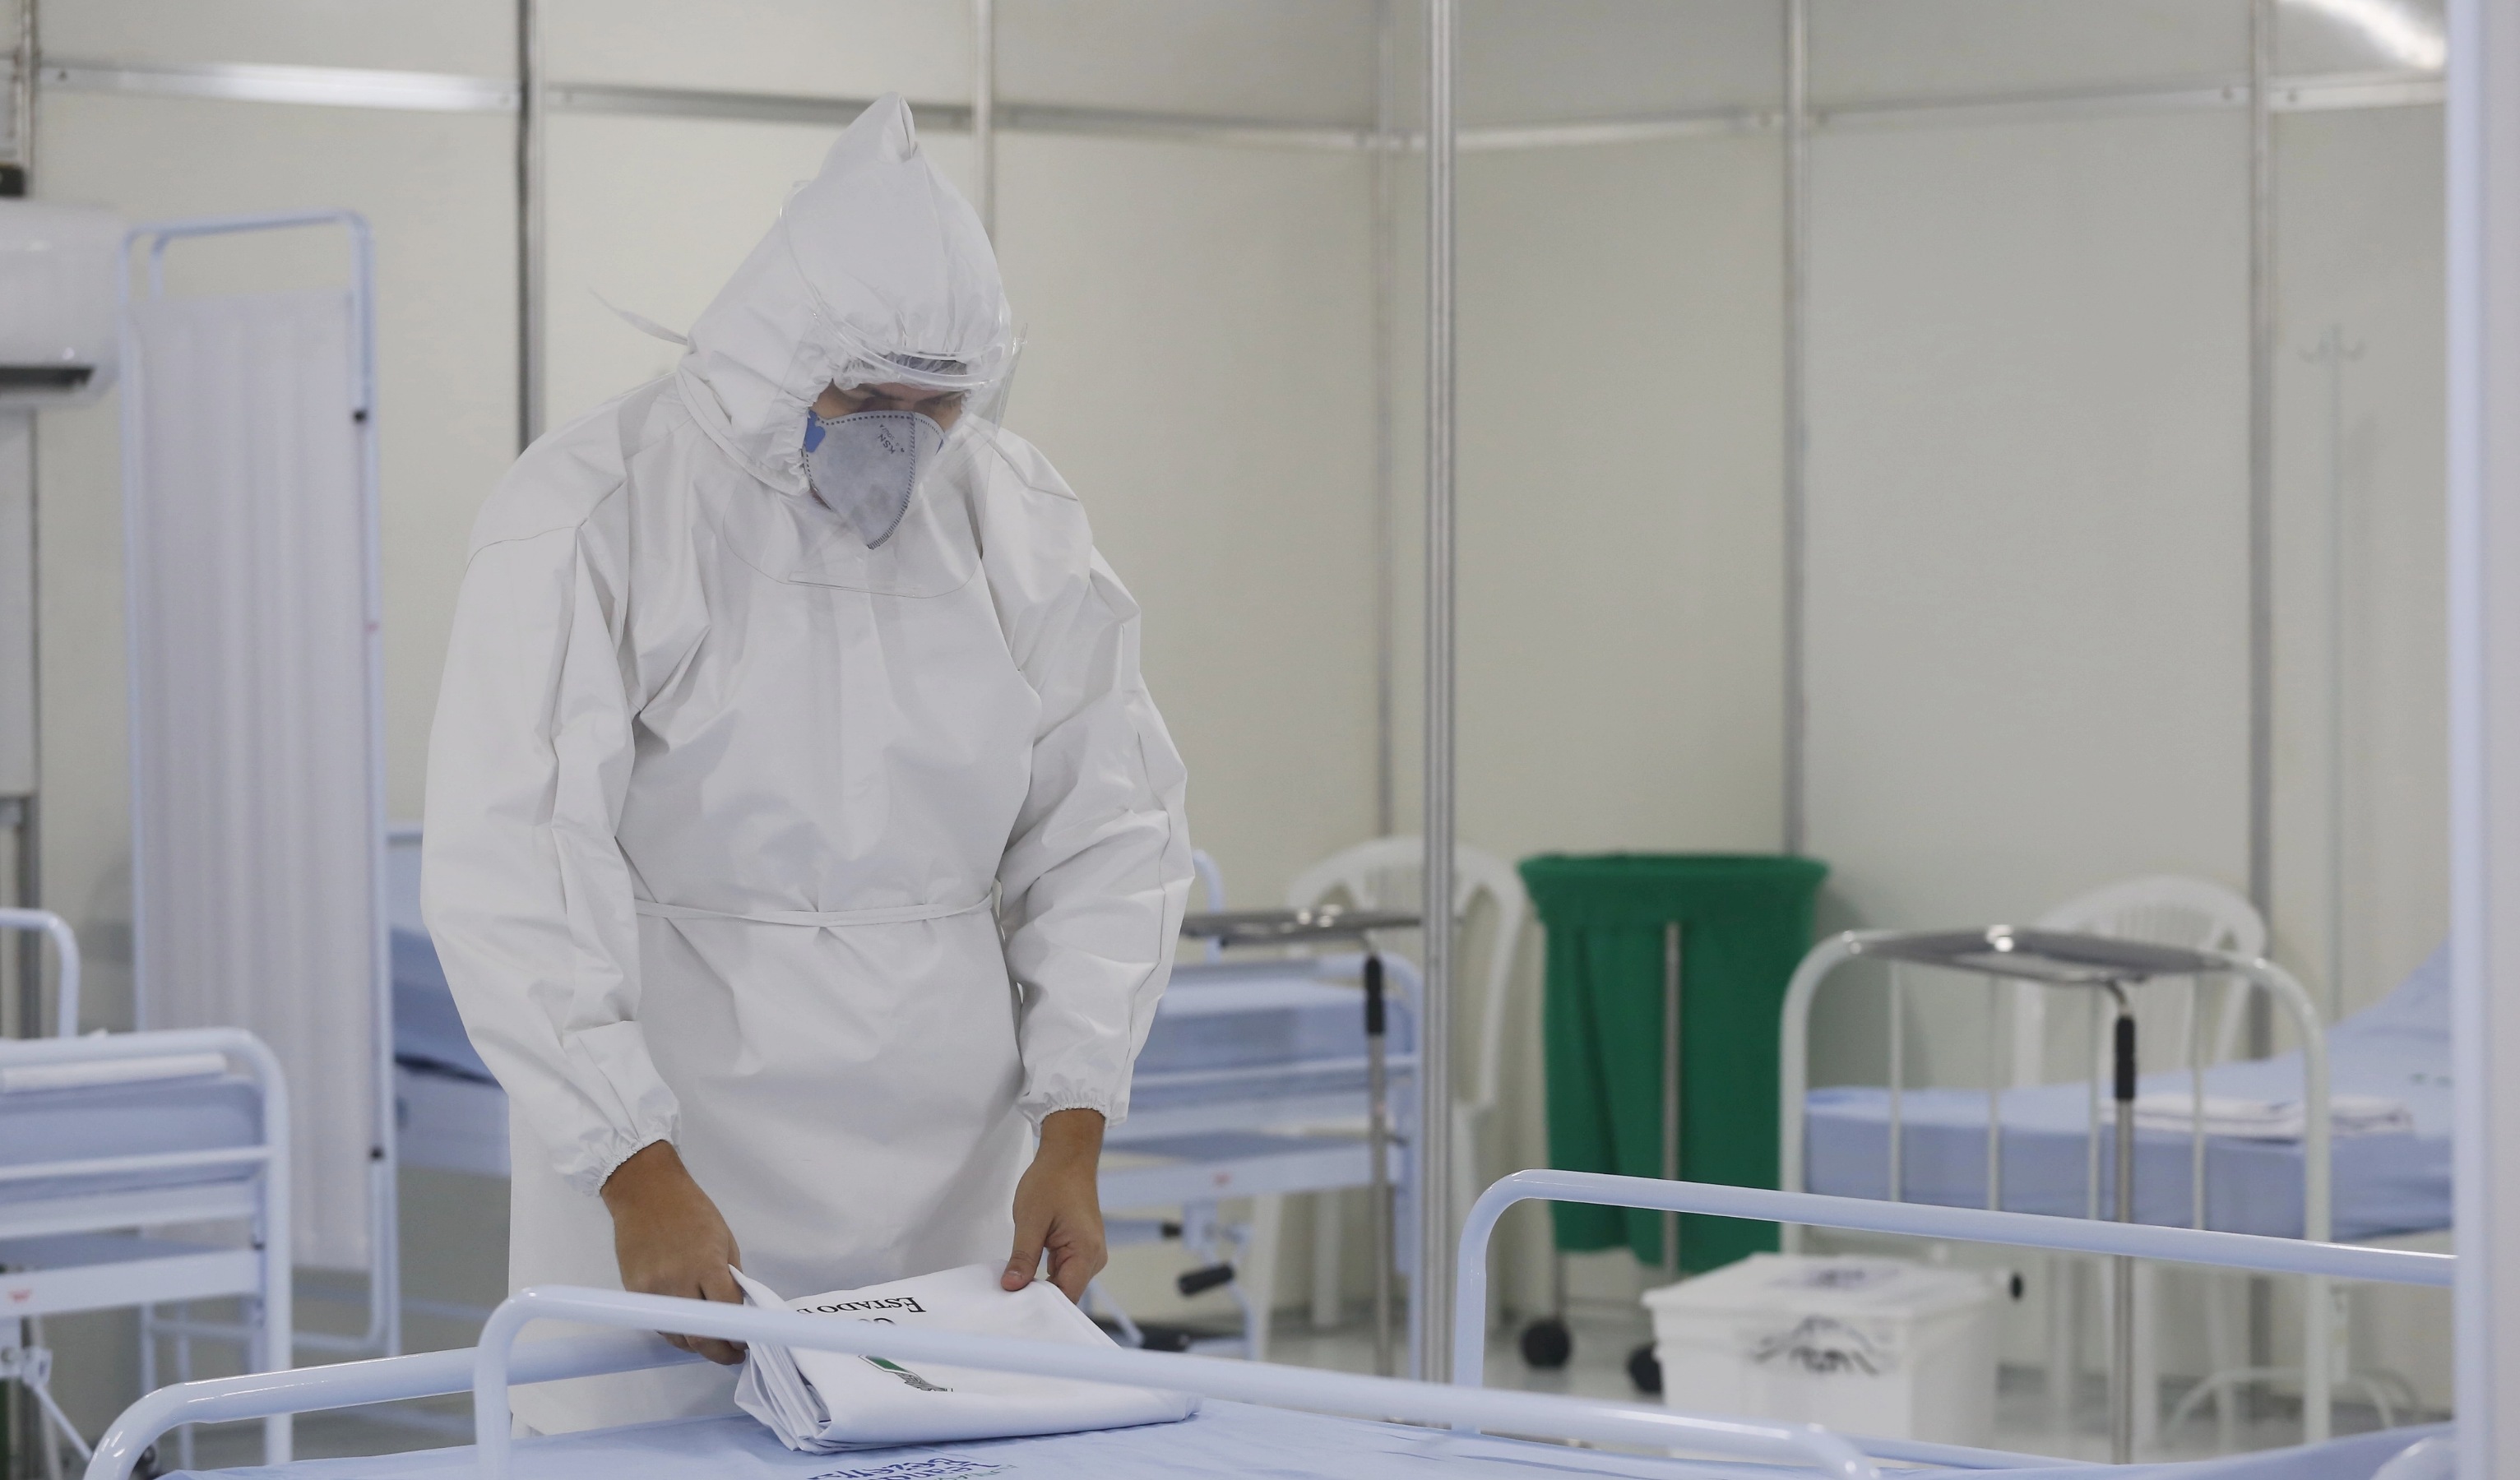 homem usando roupa de médico, máscaras, touca dobrando lençol em cima de leito de hospital